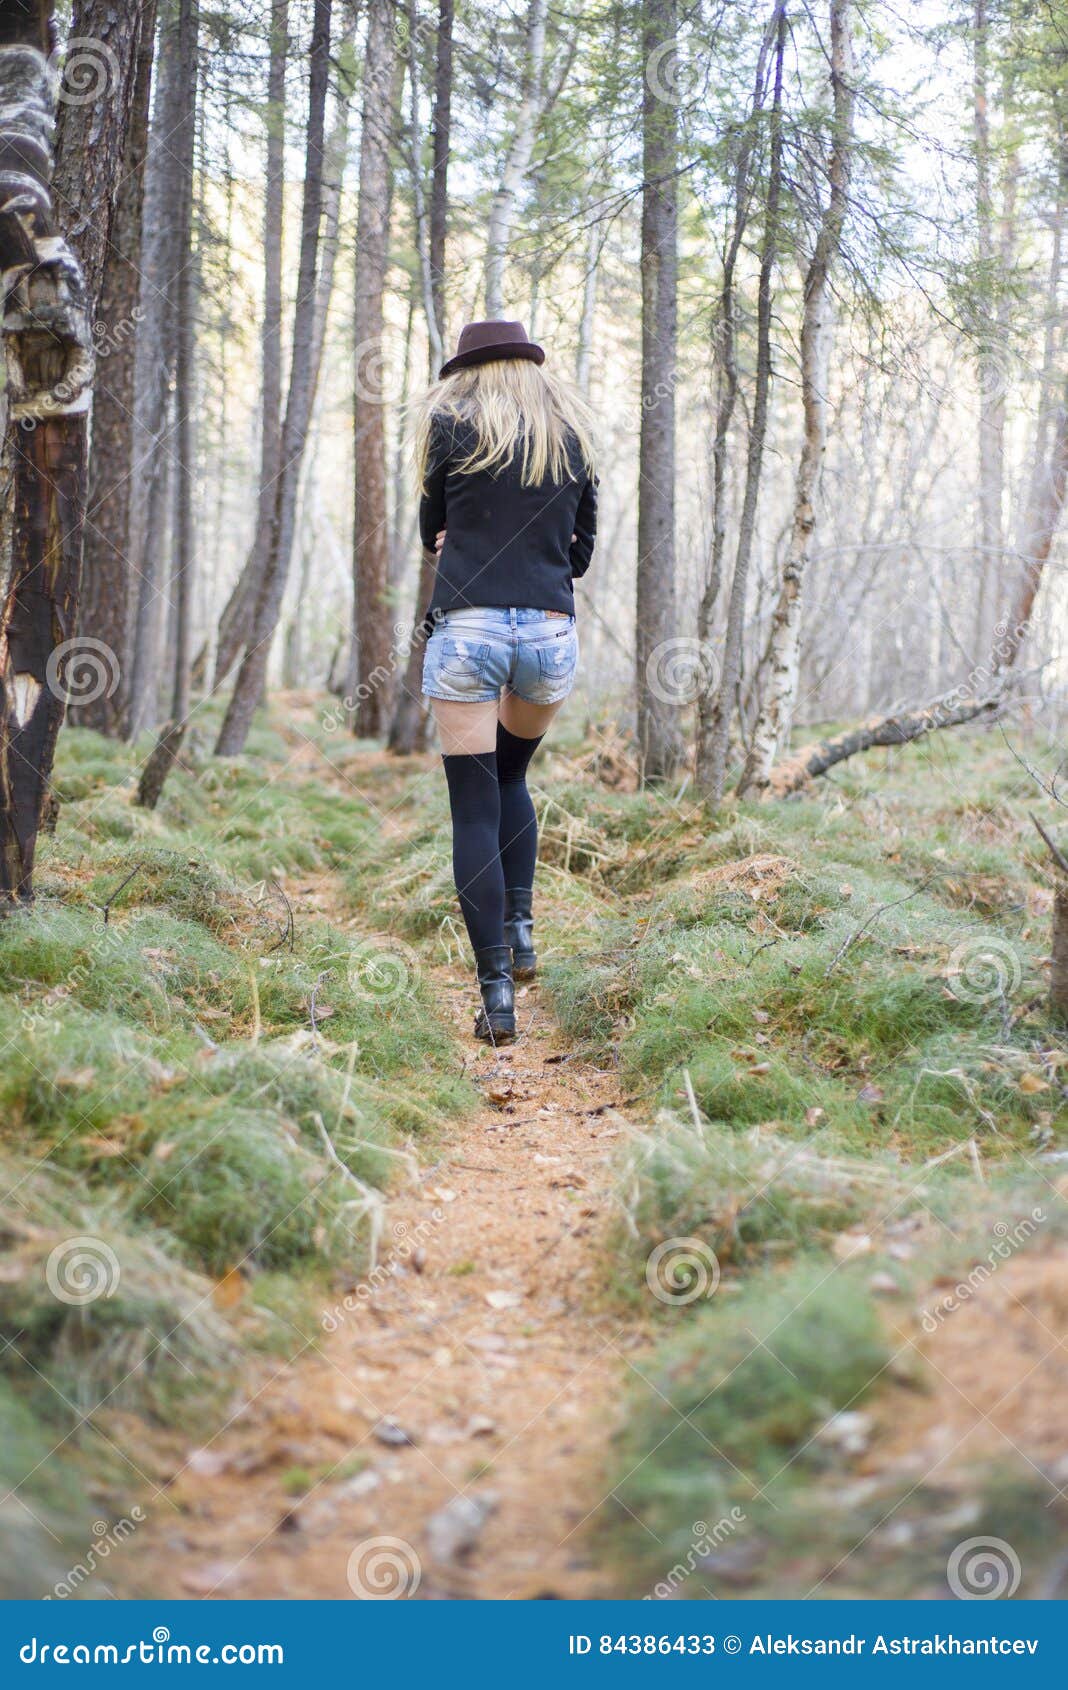 Девушки пошли пописать. Девушка испражняется в лесу. Женщина гуляет в лесу. Большие девочки в лесу. Девочка покакал в лесу.